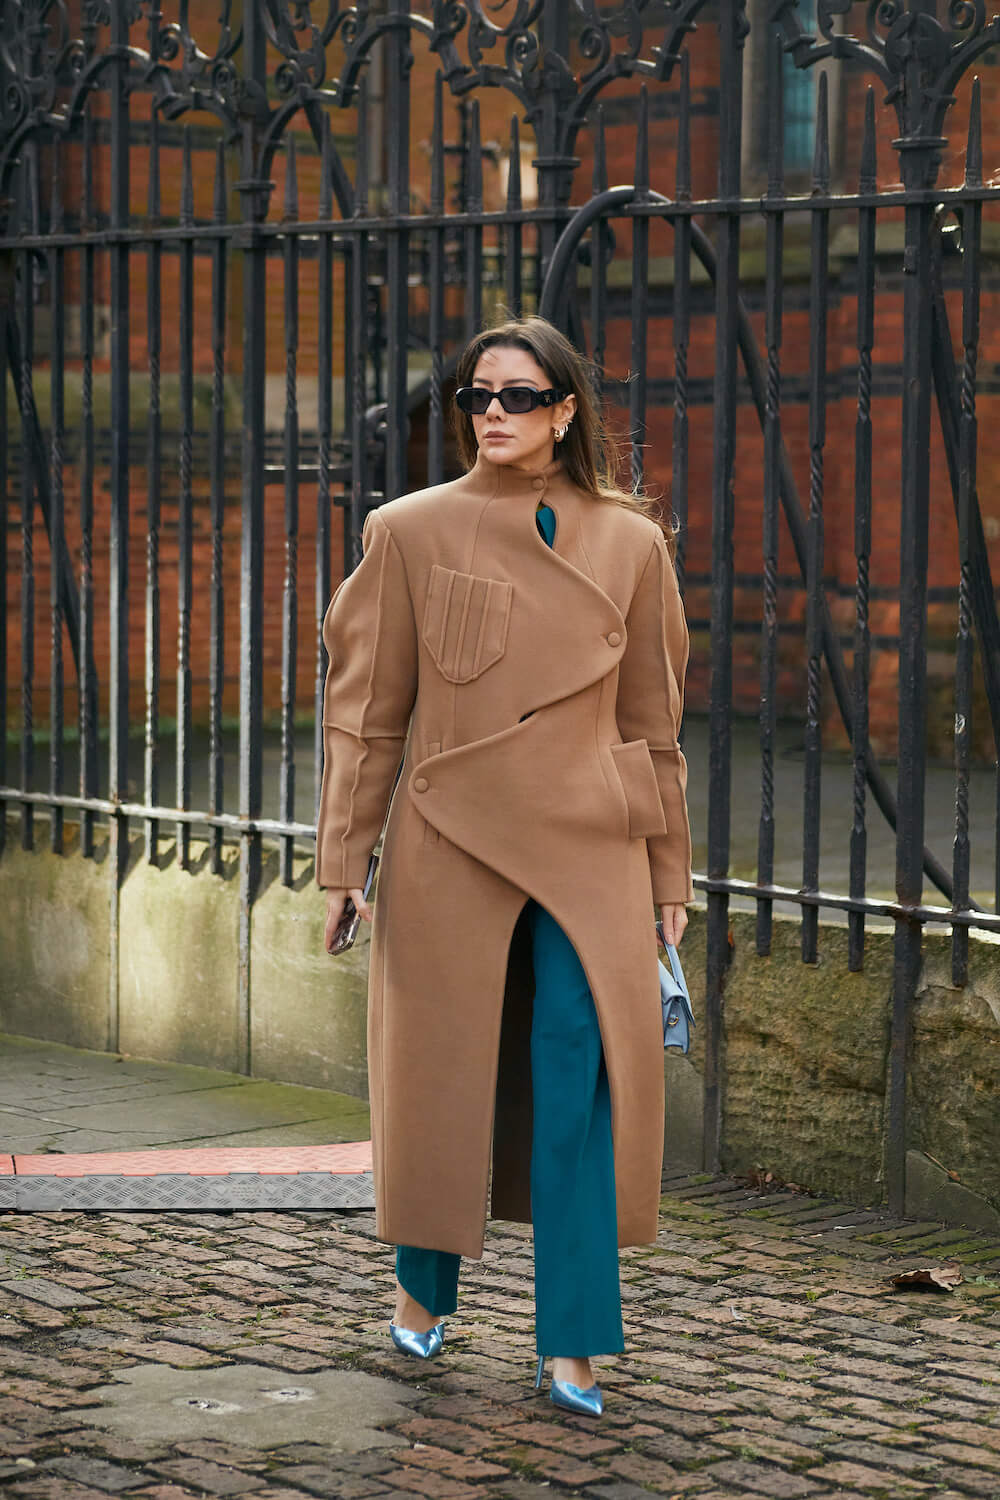 london fashion week attendee in sunglasses